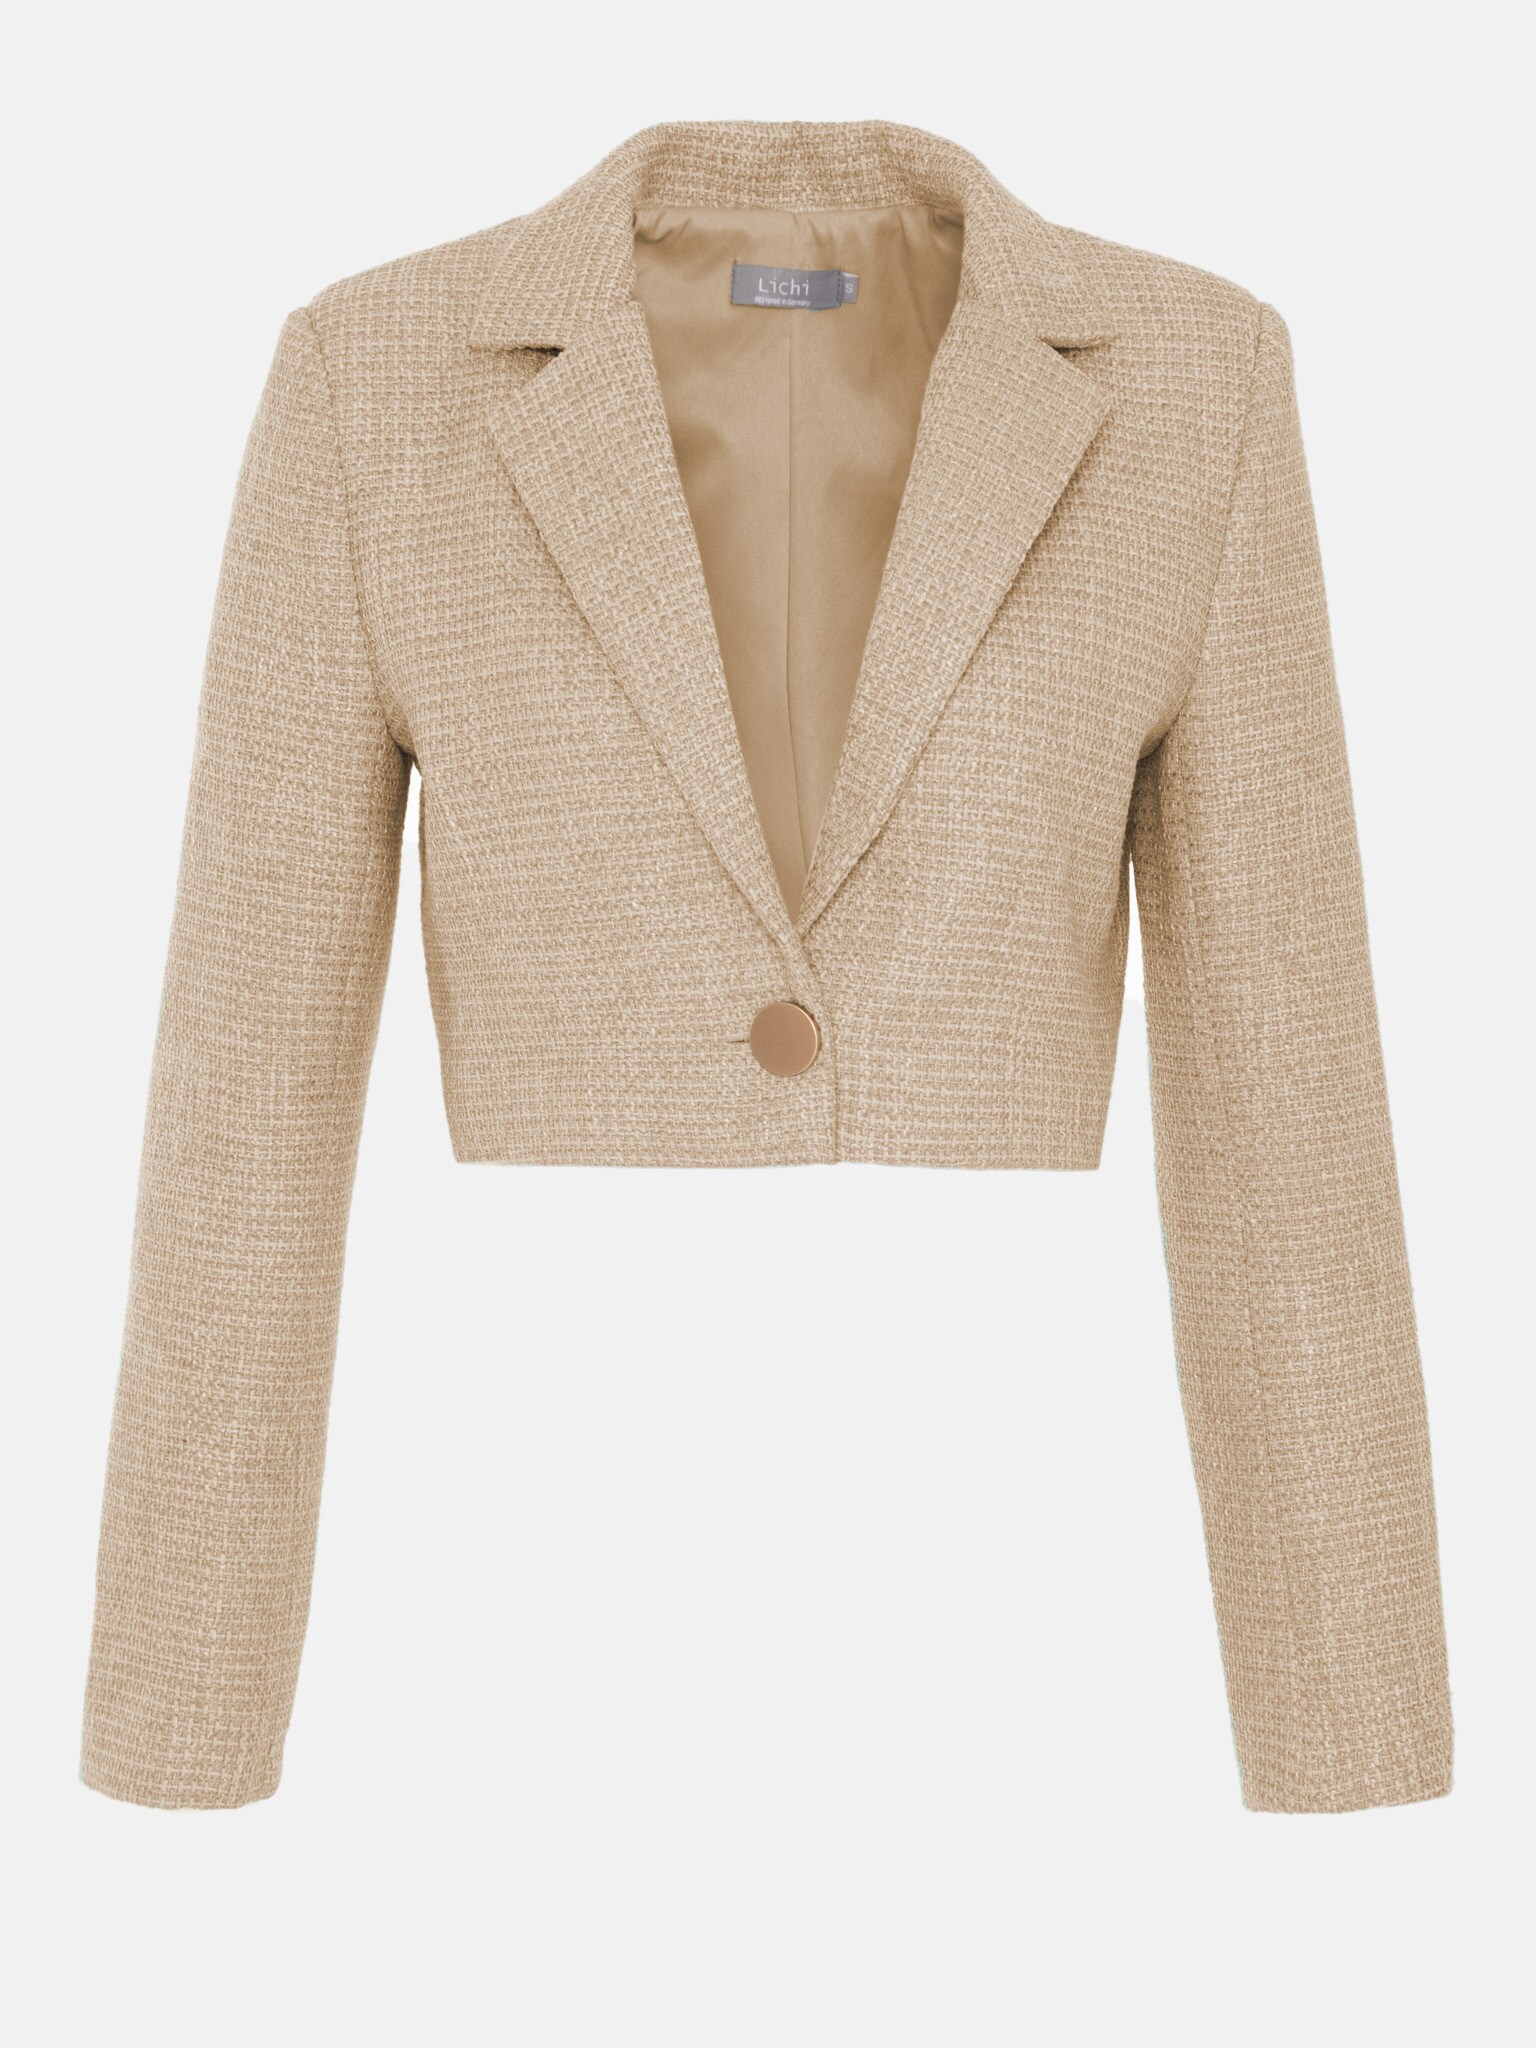 LICHI - Online fashion store :: Cropped tweed blazer